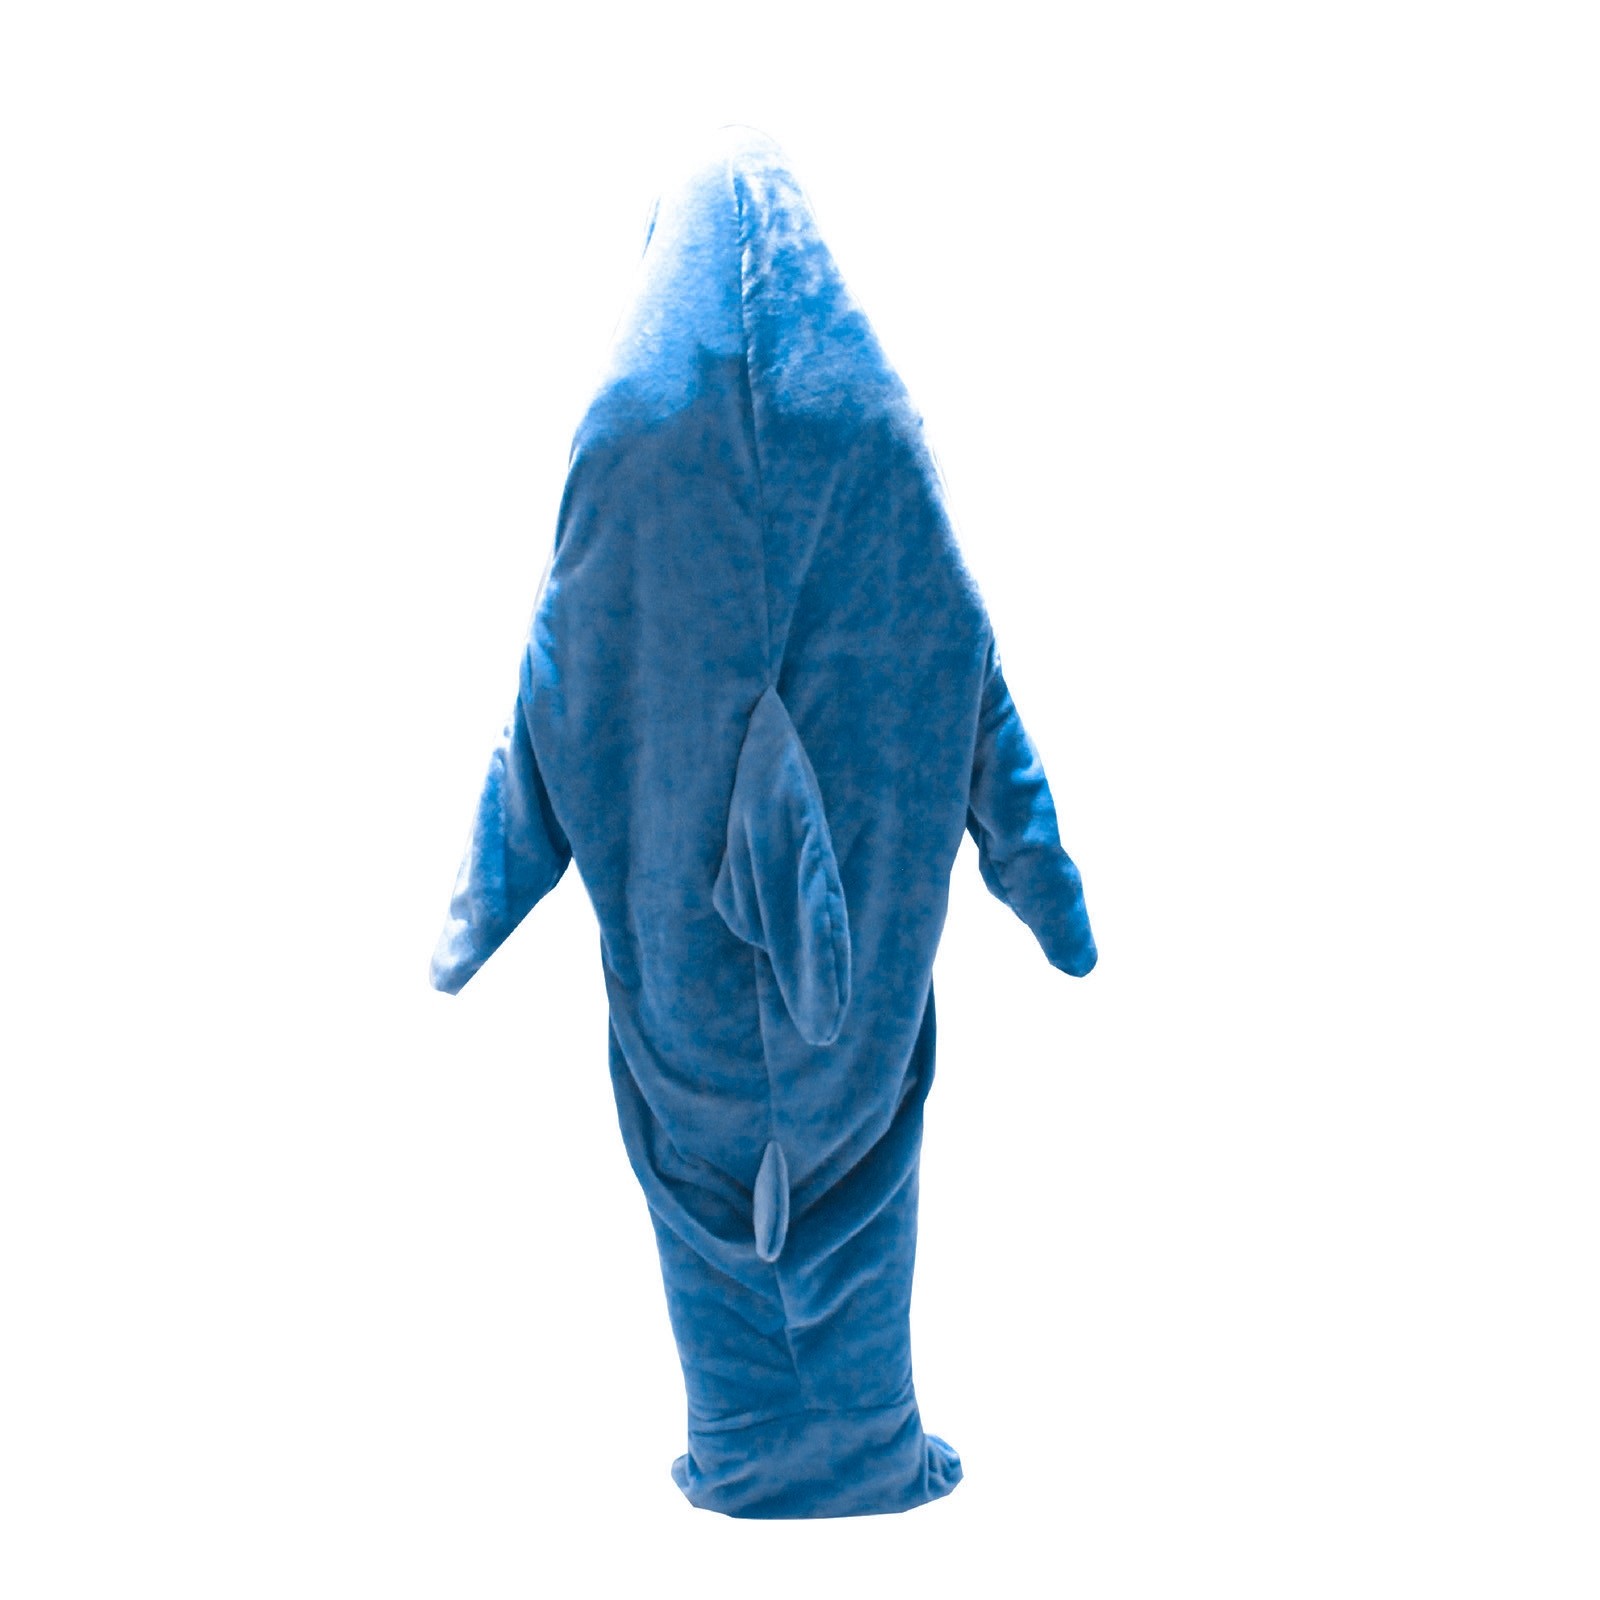 Buy Light Blue Shark Blanket Adult Super Soft Hoodie Sleeping Bag Loose Onesie  Pajamas in Quality Onesie Store.